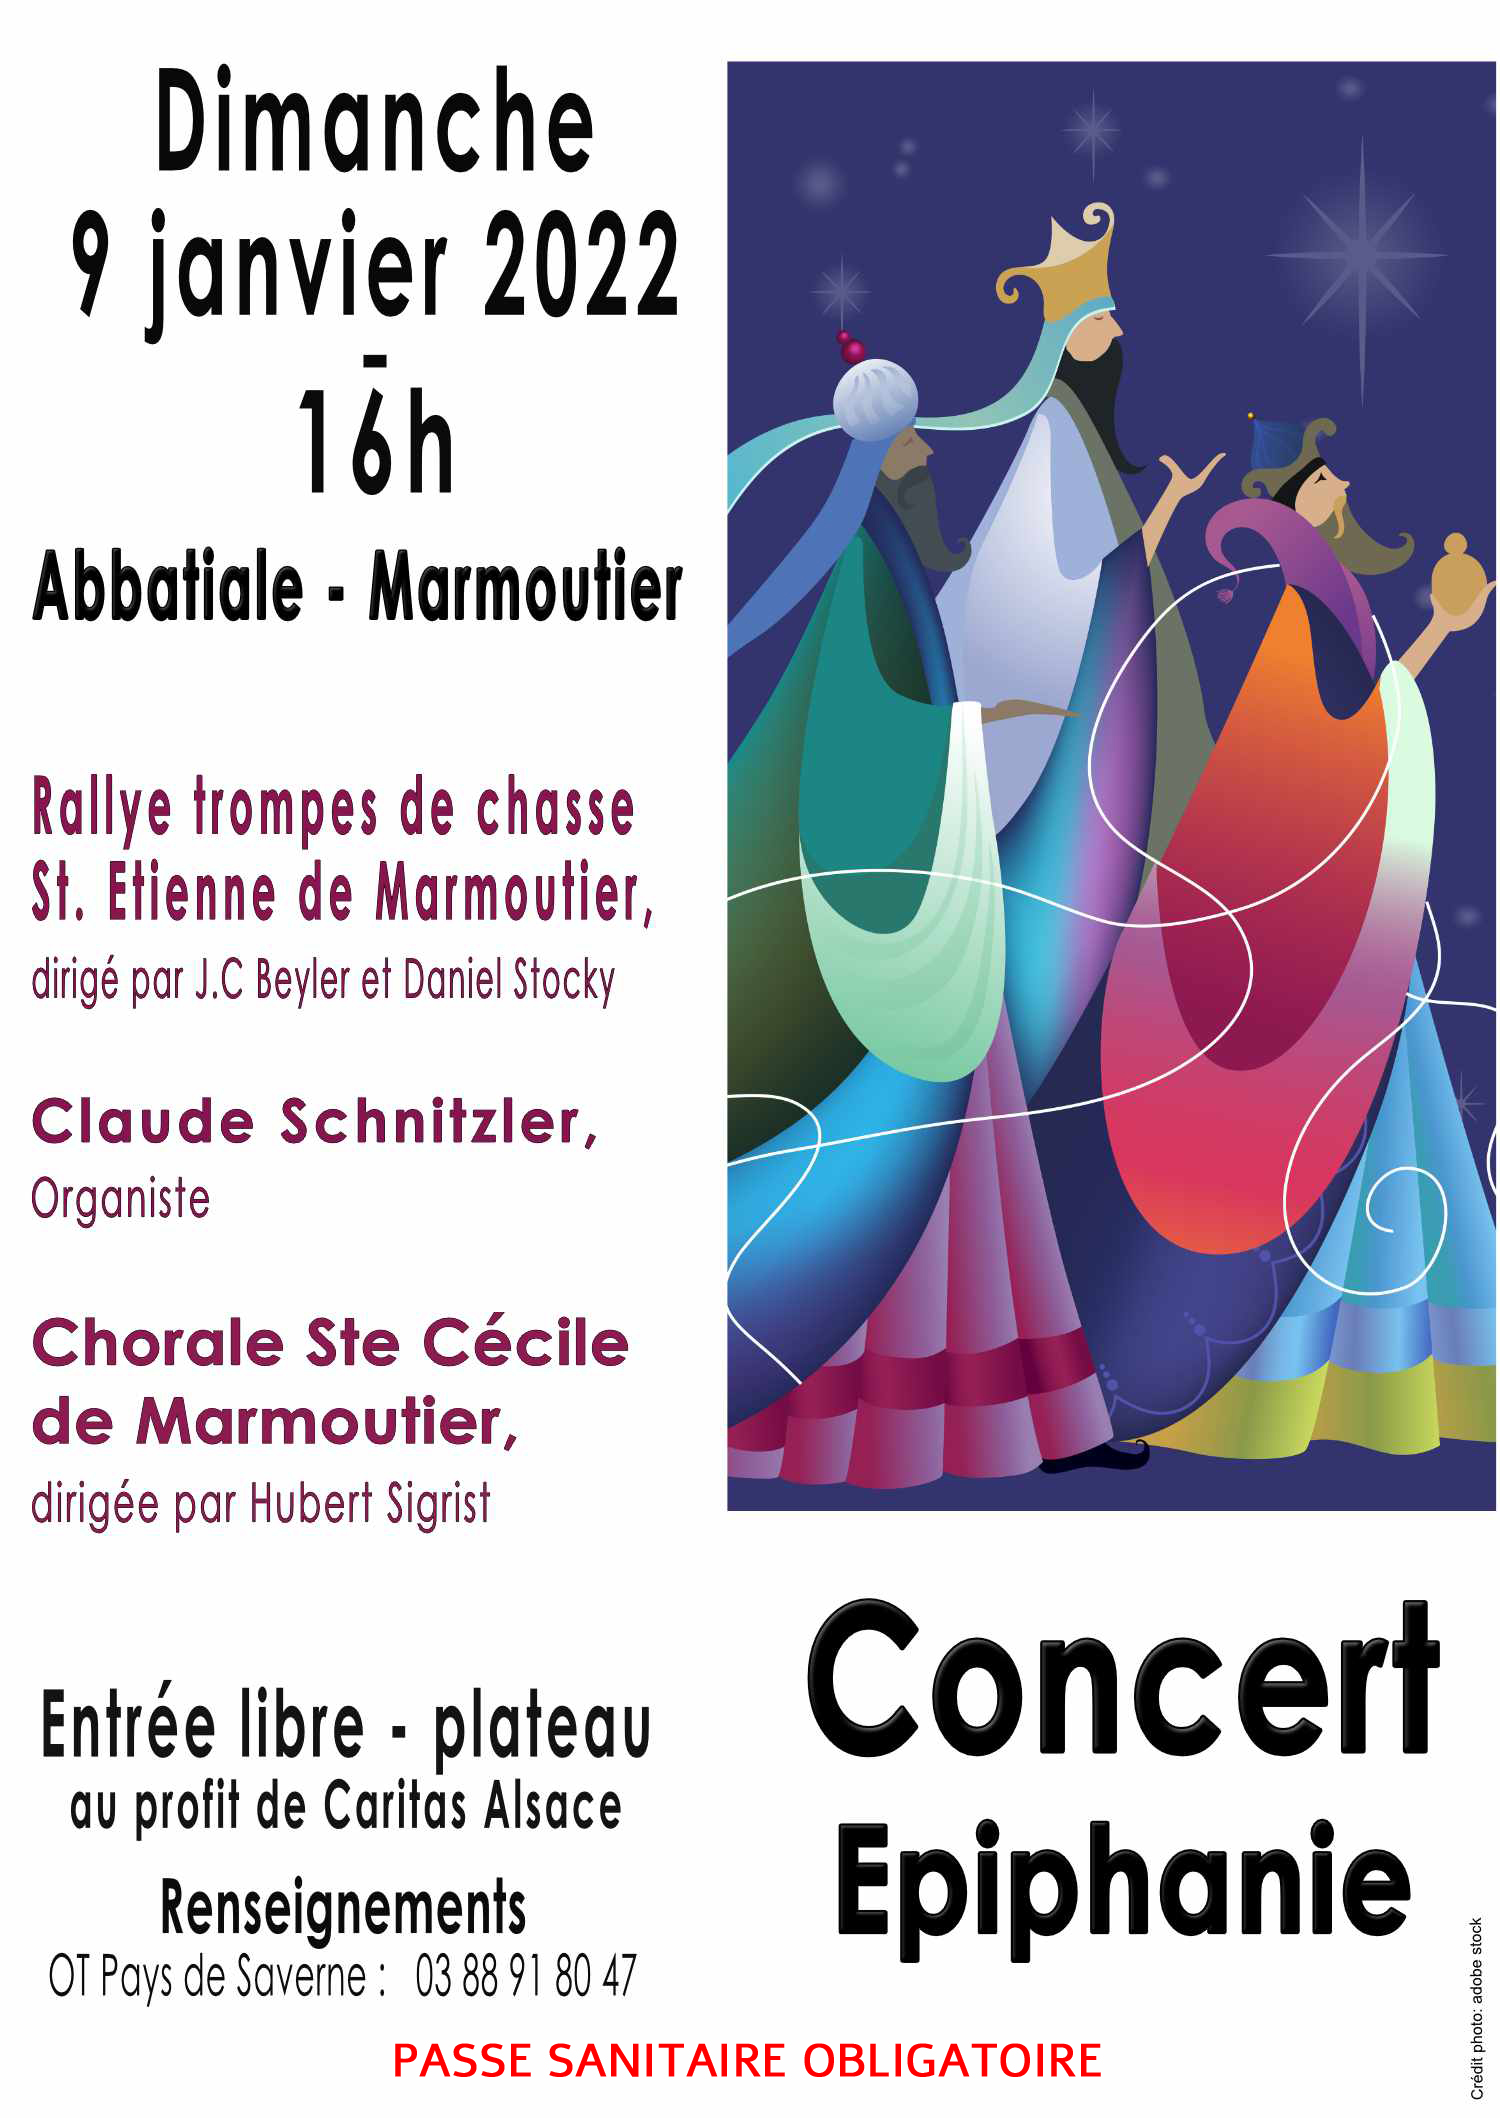 Concert de l’Epiphanie à Marmoutier le 9 janvier à 16 heures